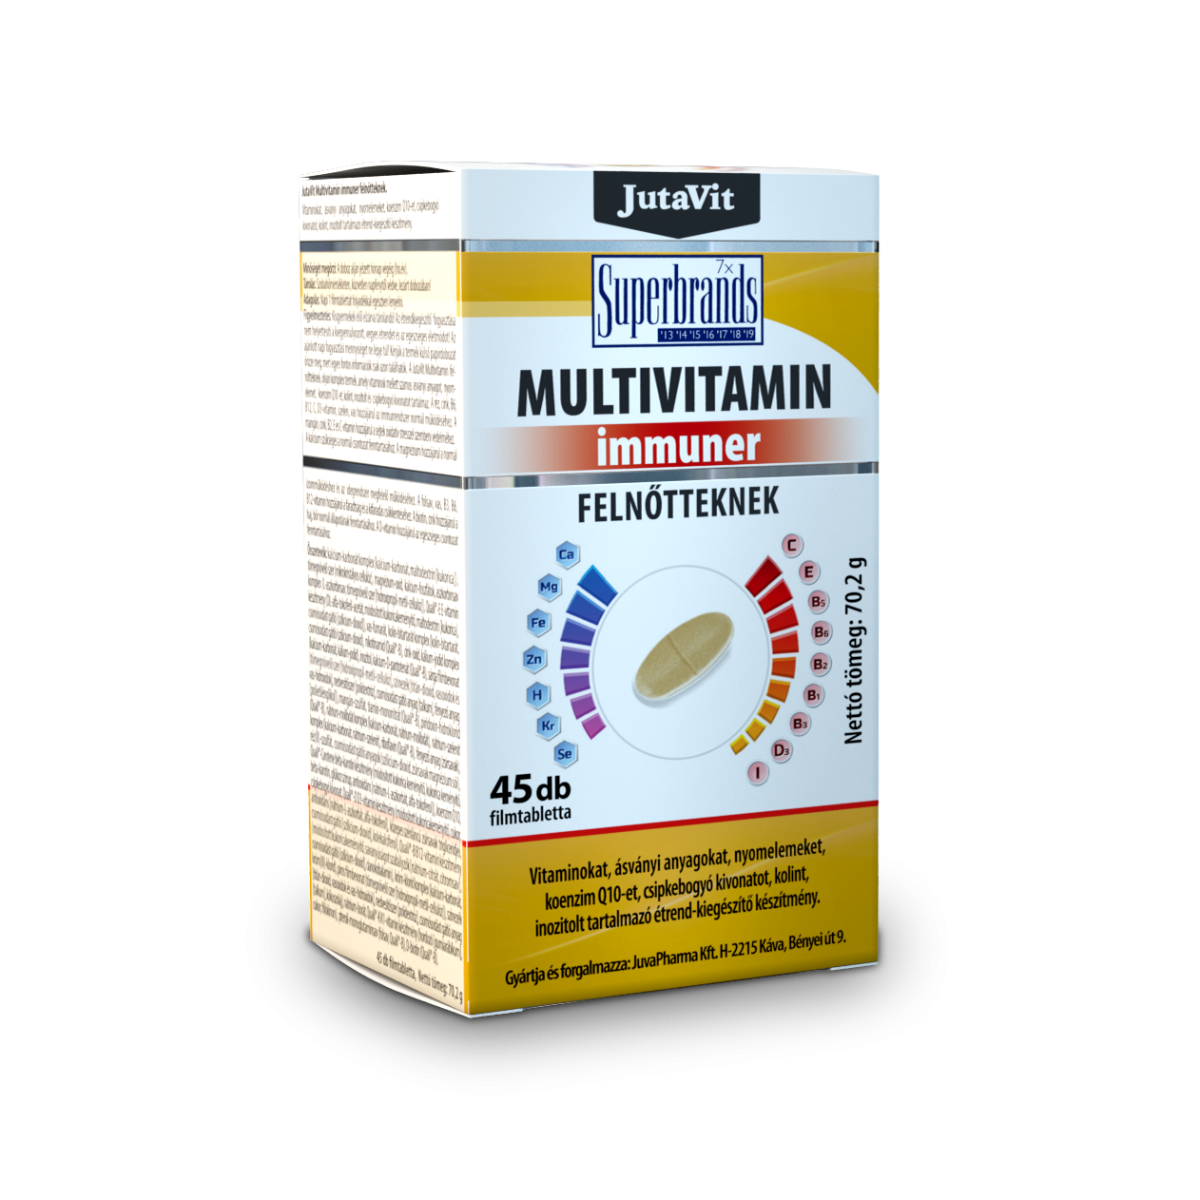 JutaVit Multivitamin Immuner filmtabletta felnőtteknek